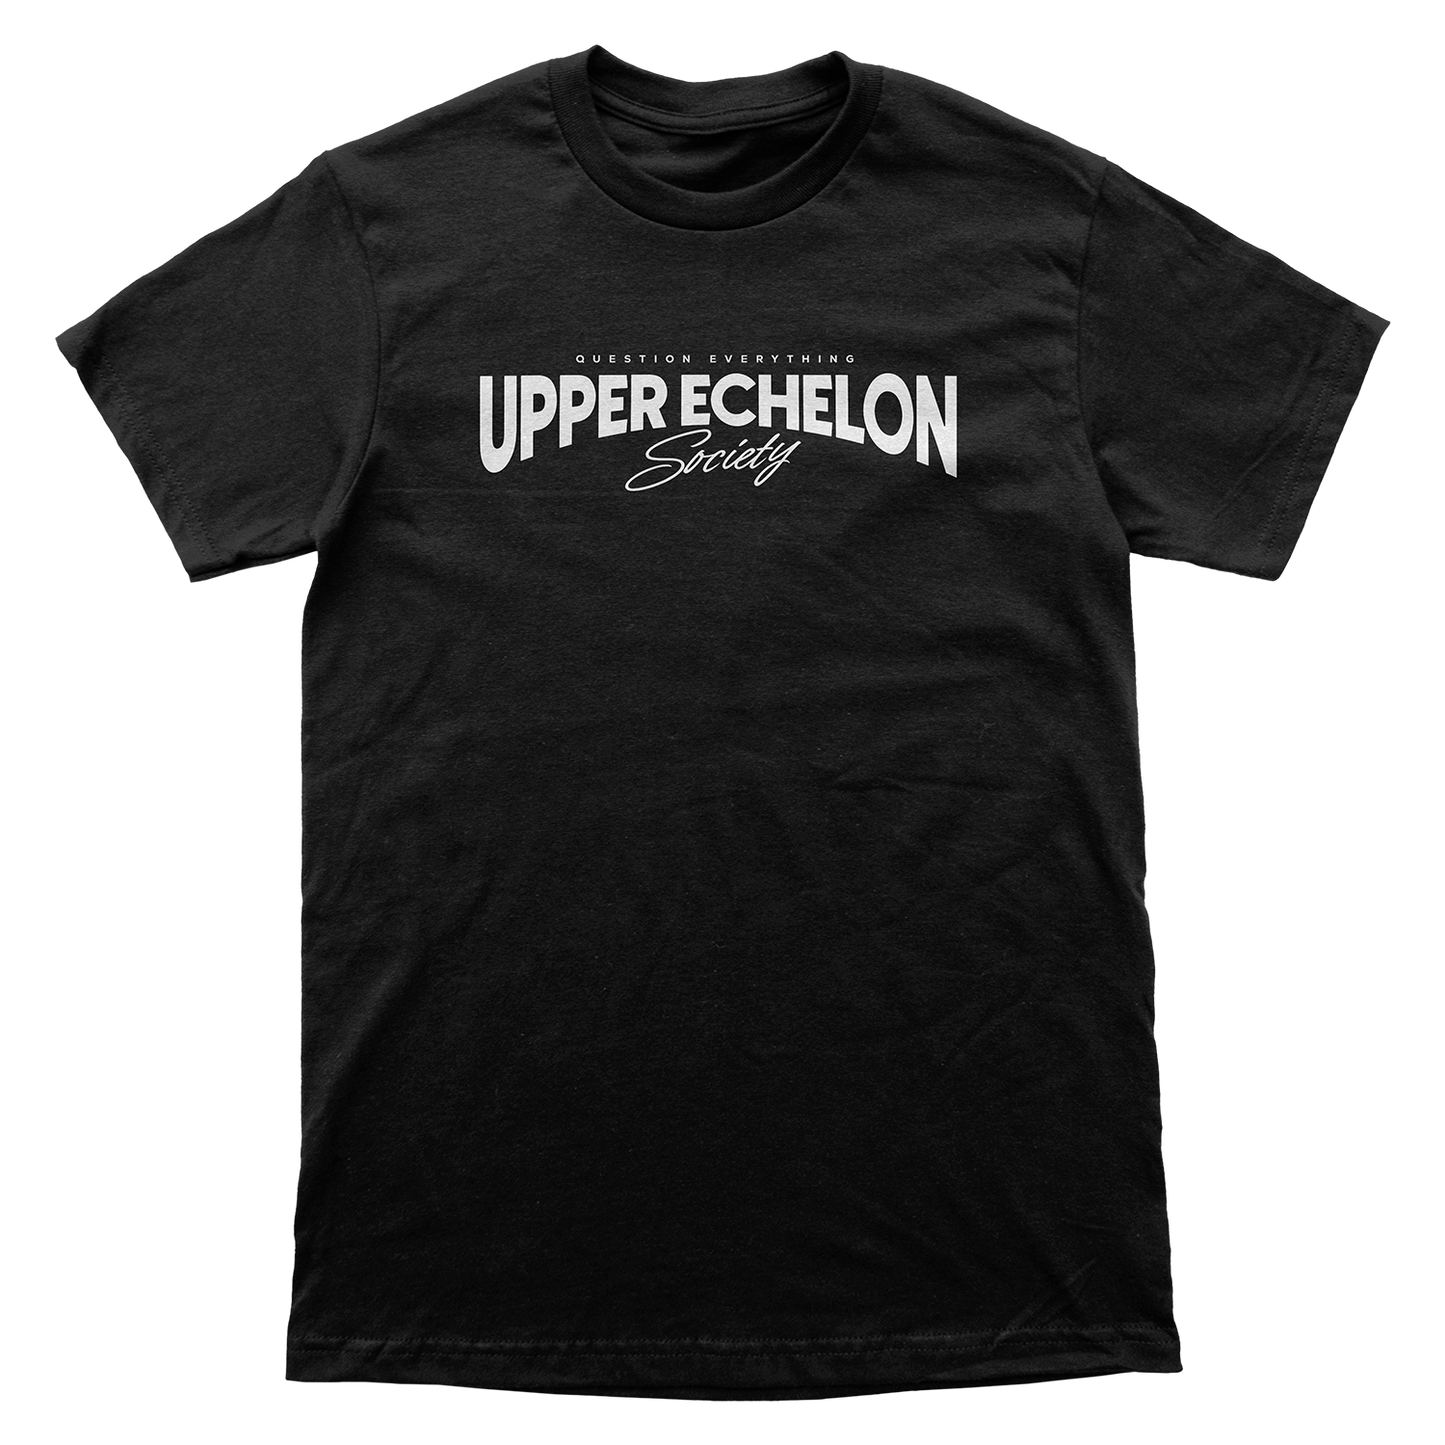 Upper Echelon Shop